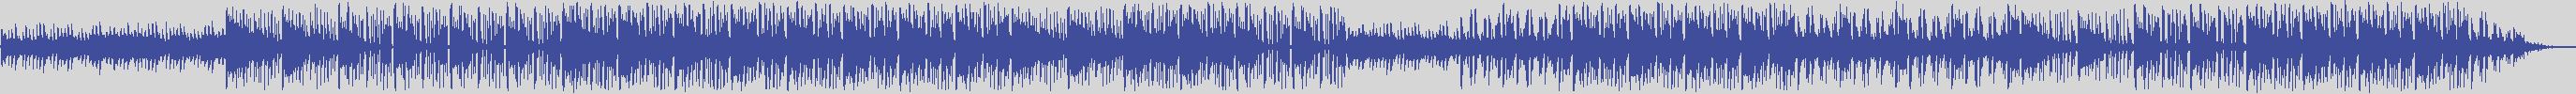 noclouds_chillout [NOC145] William Dj - Edx by Me [Original Mix] audio wave form